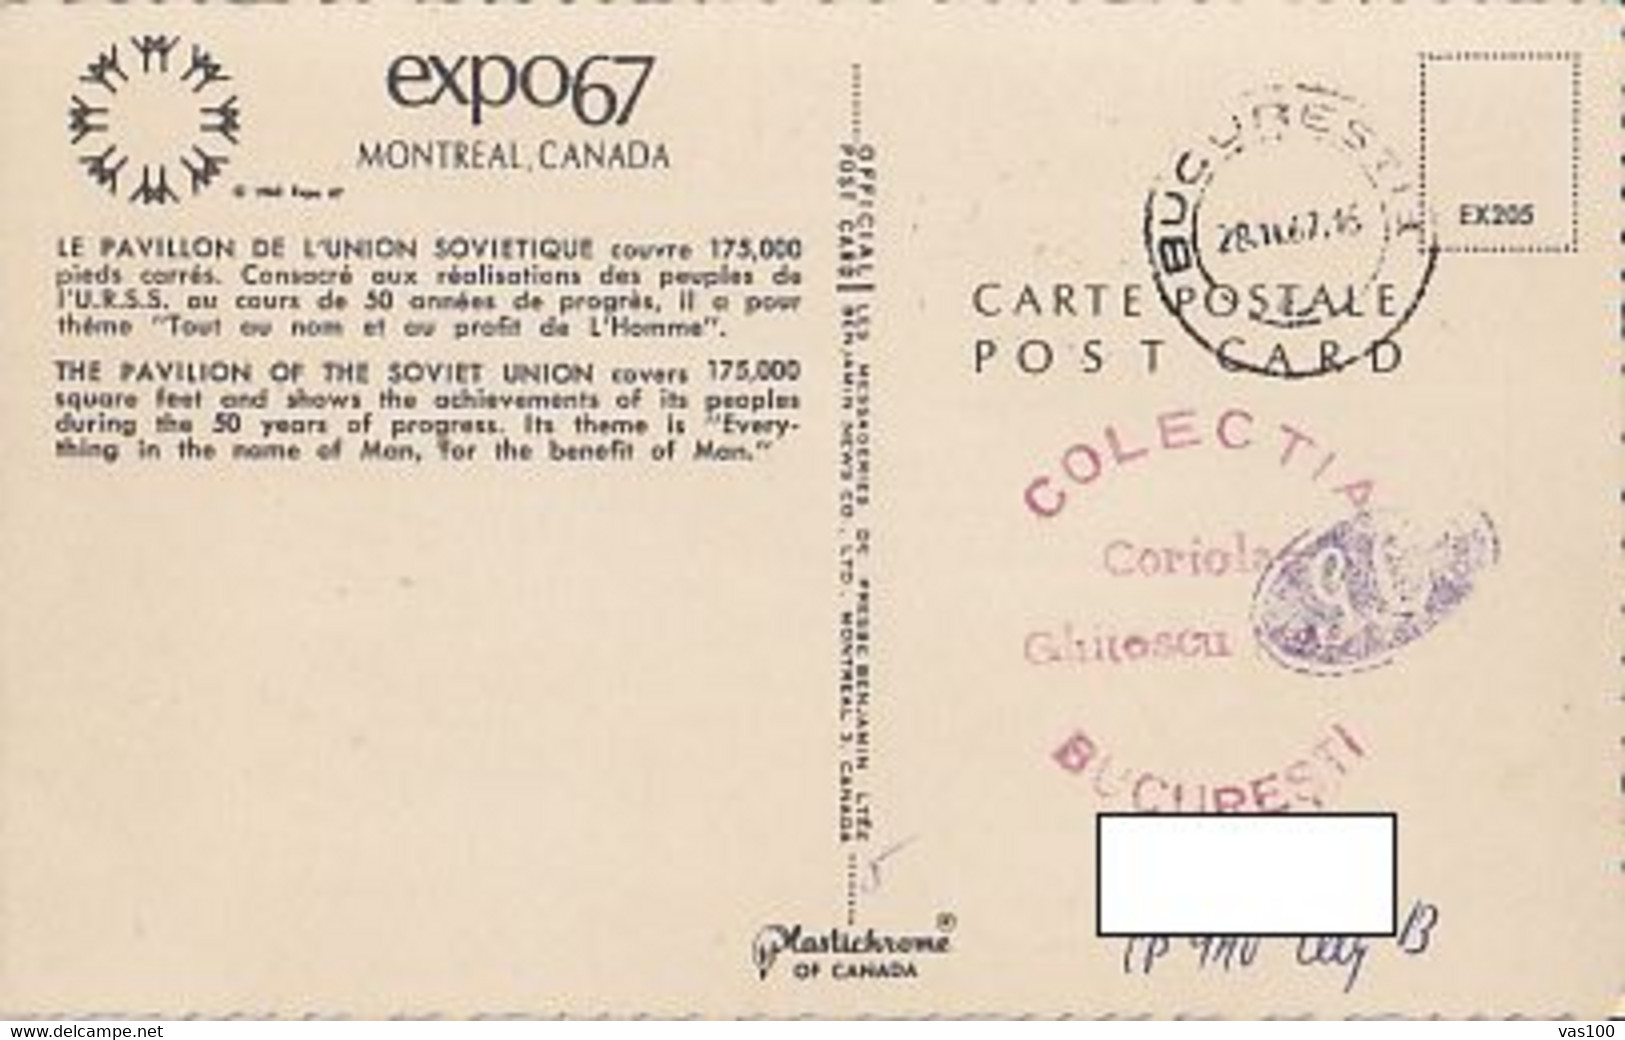 UNIVERSAL EXHIBITIONS, MONTREAL'67, SOVIET UNION PAVILION, SPECIAL POSTCARD, 1967, ROMANIA - 1967 – Montréal (Canada)